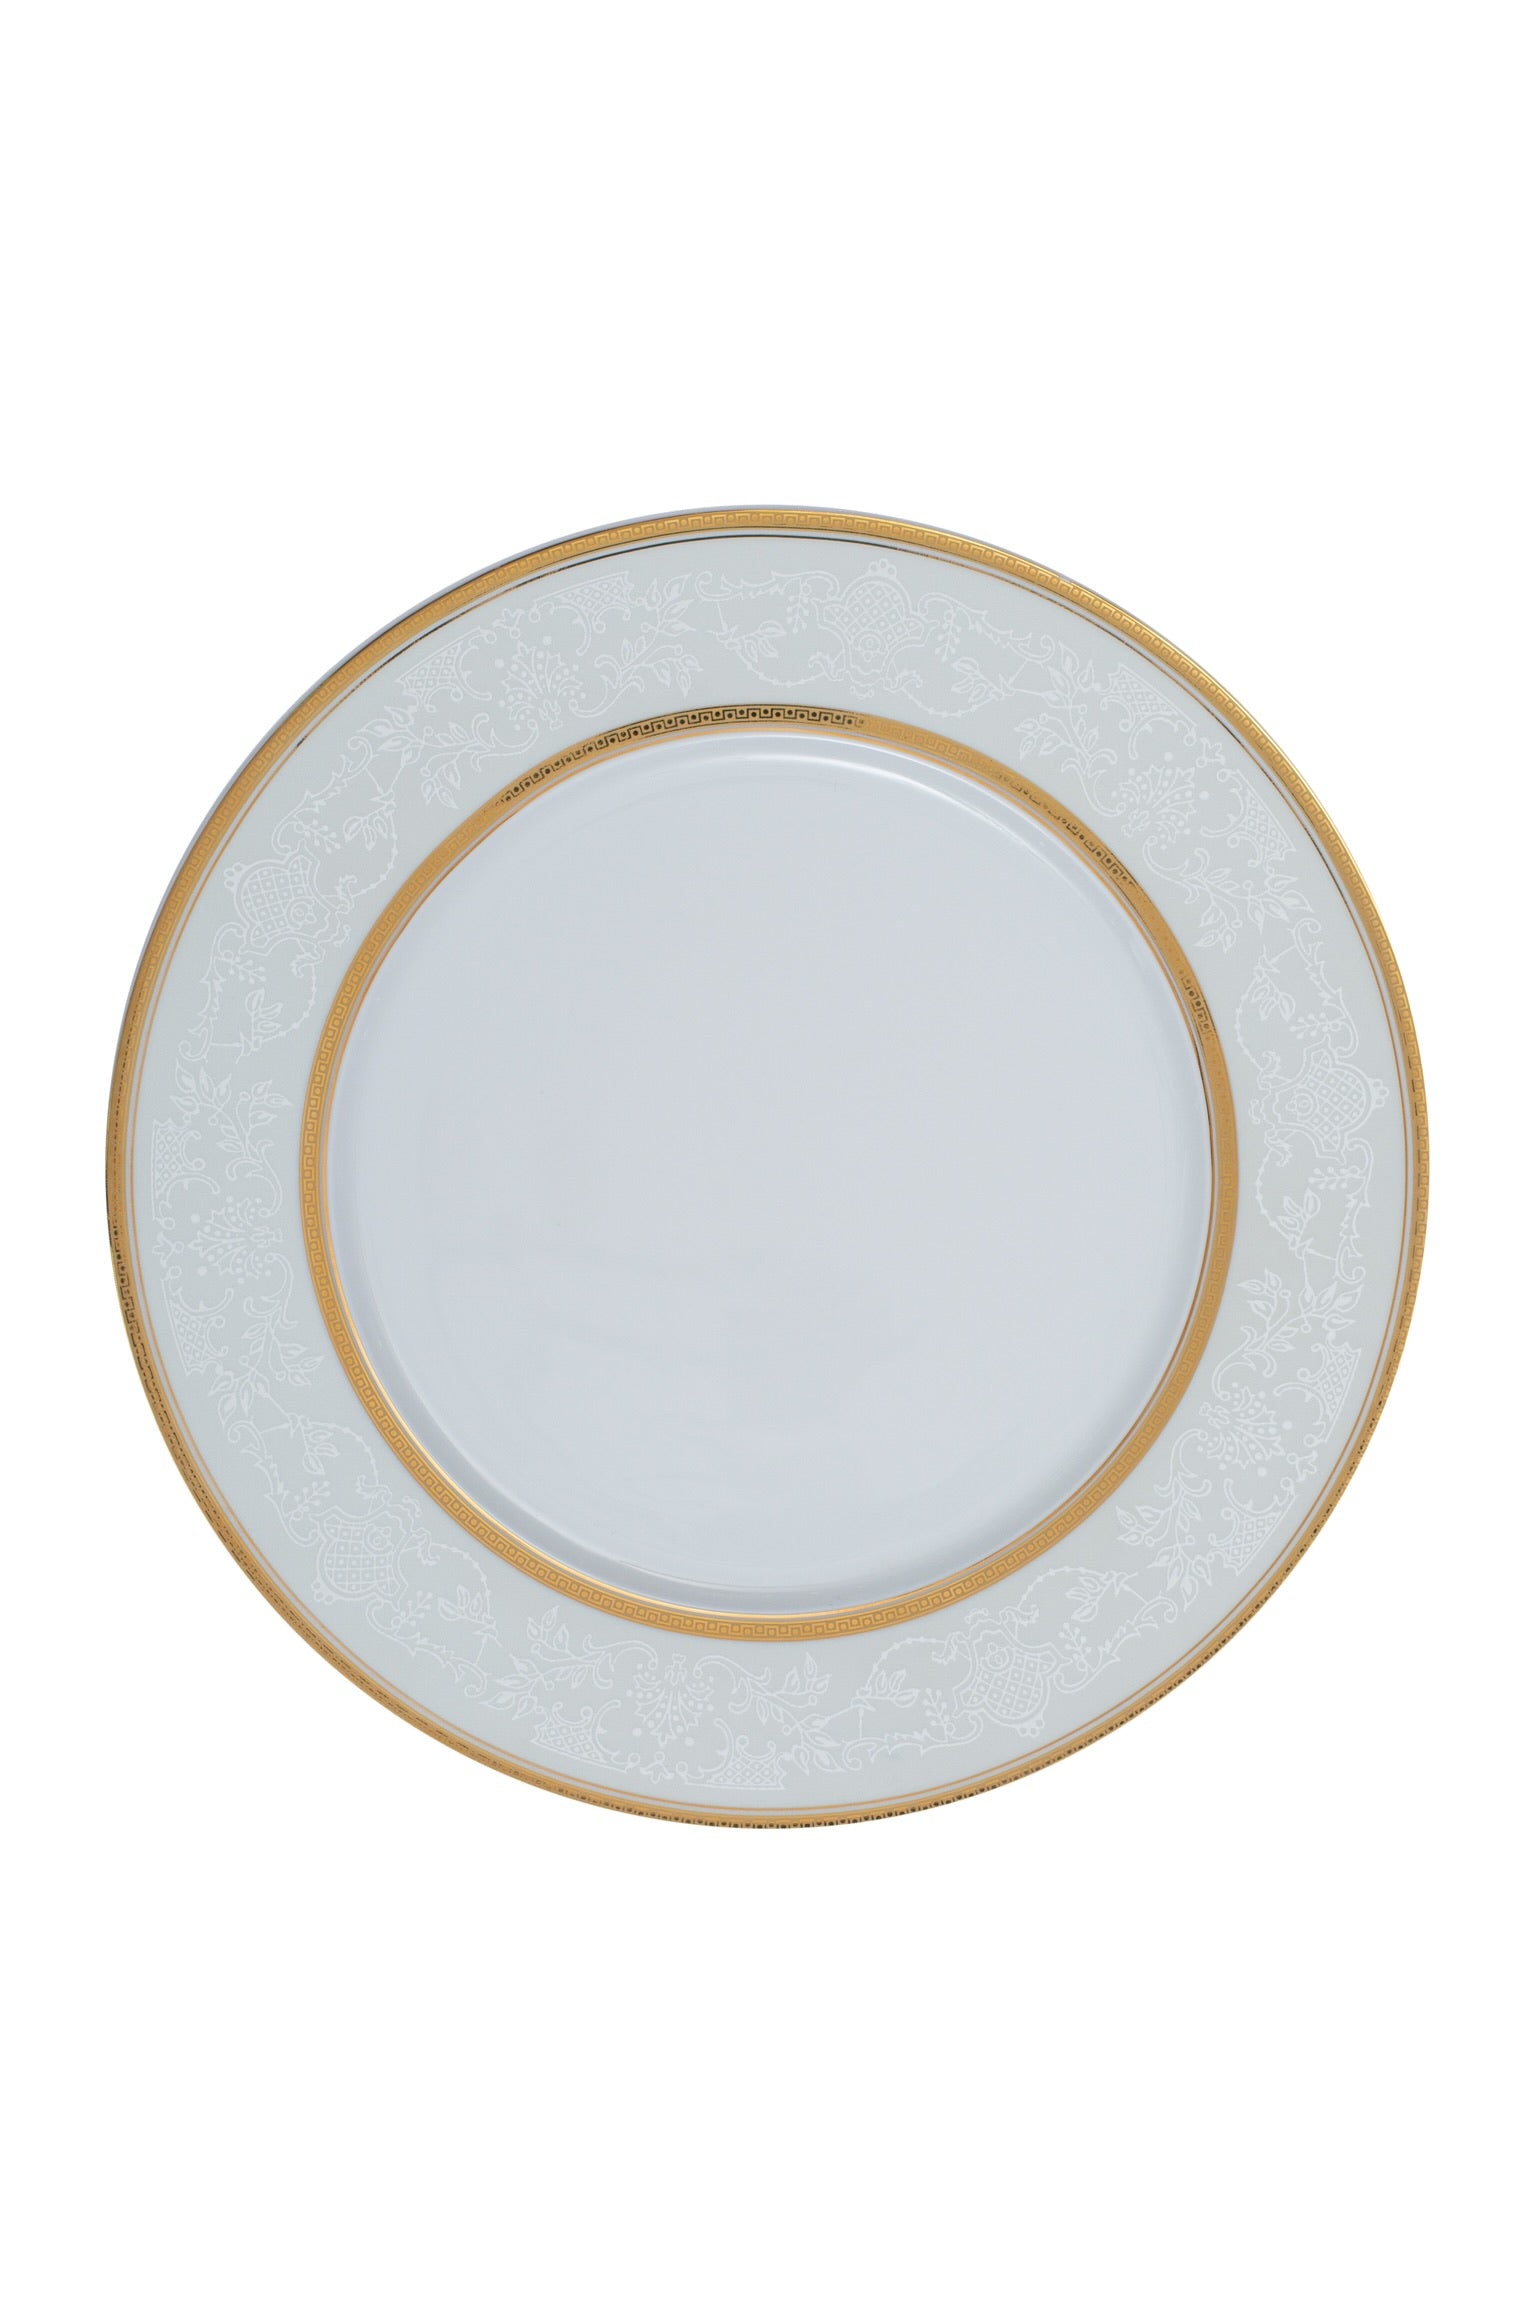 Falkenporzellan Dinner Set, 112 Pieces -Gold -Porcelain